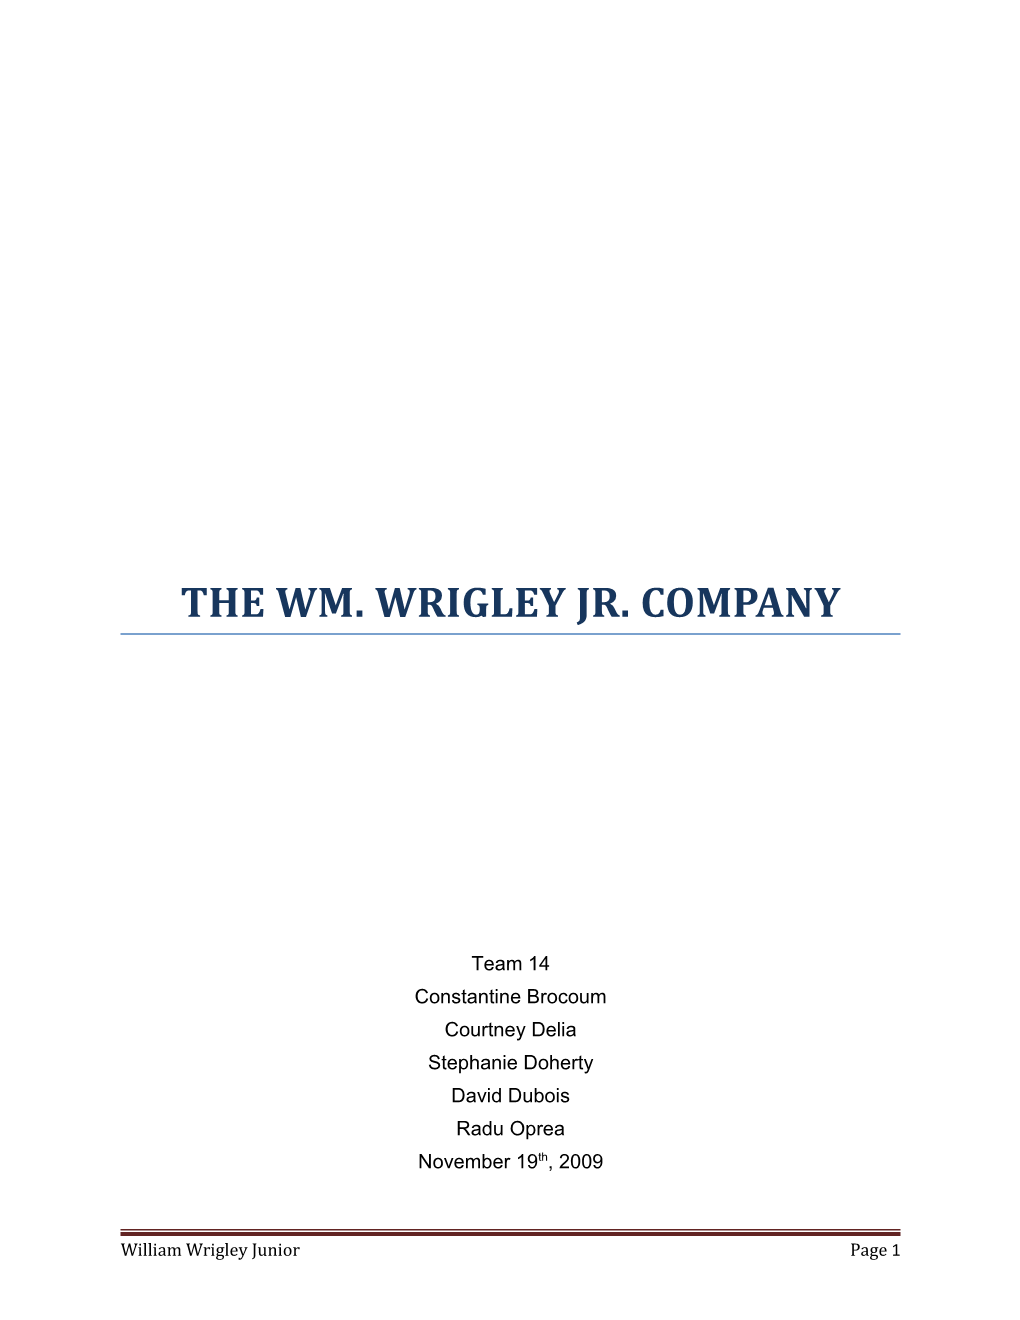 The Wm. Wrigley Jr. Company